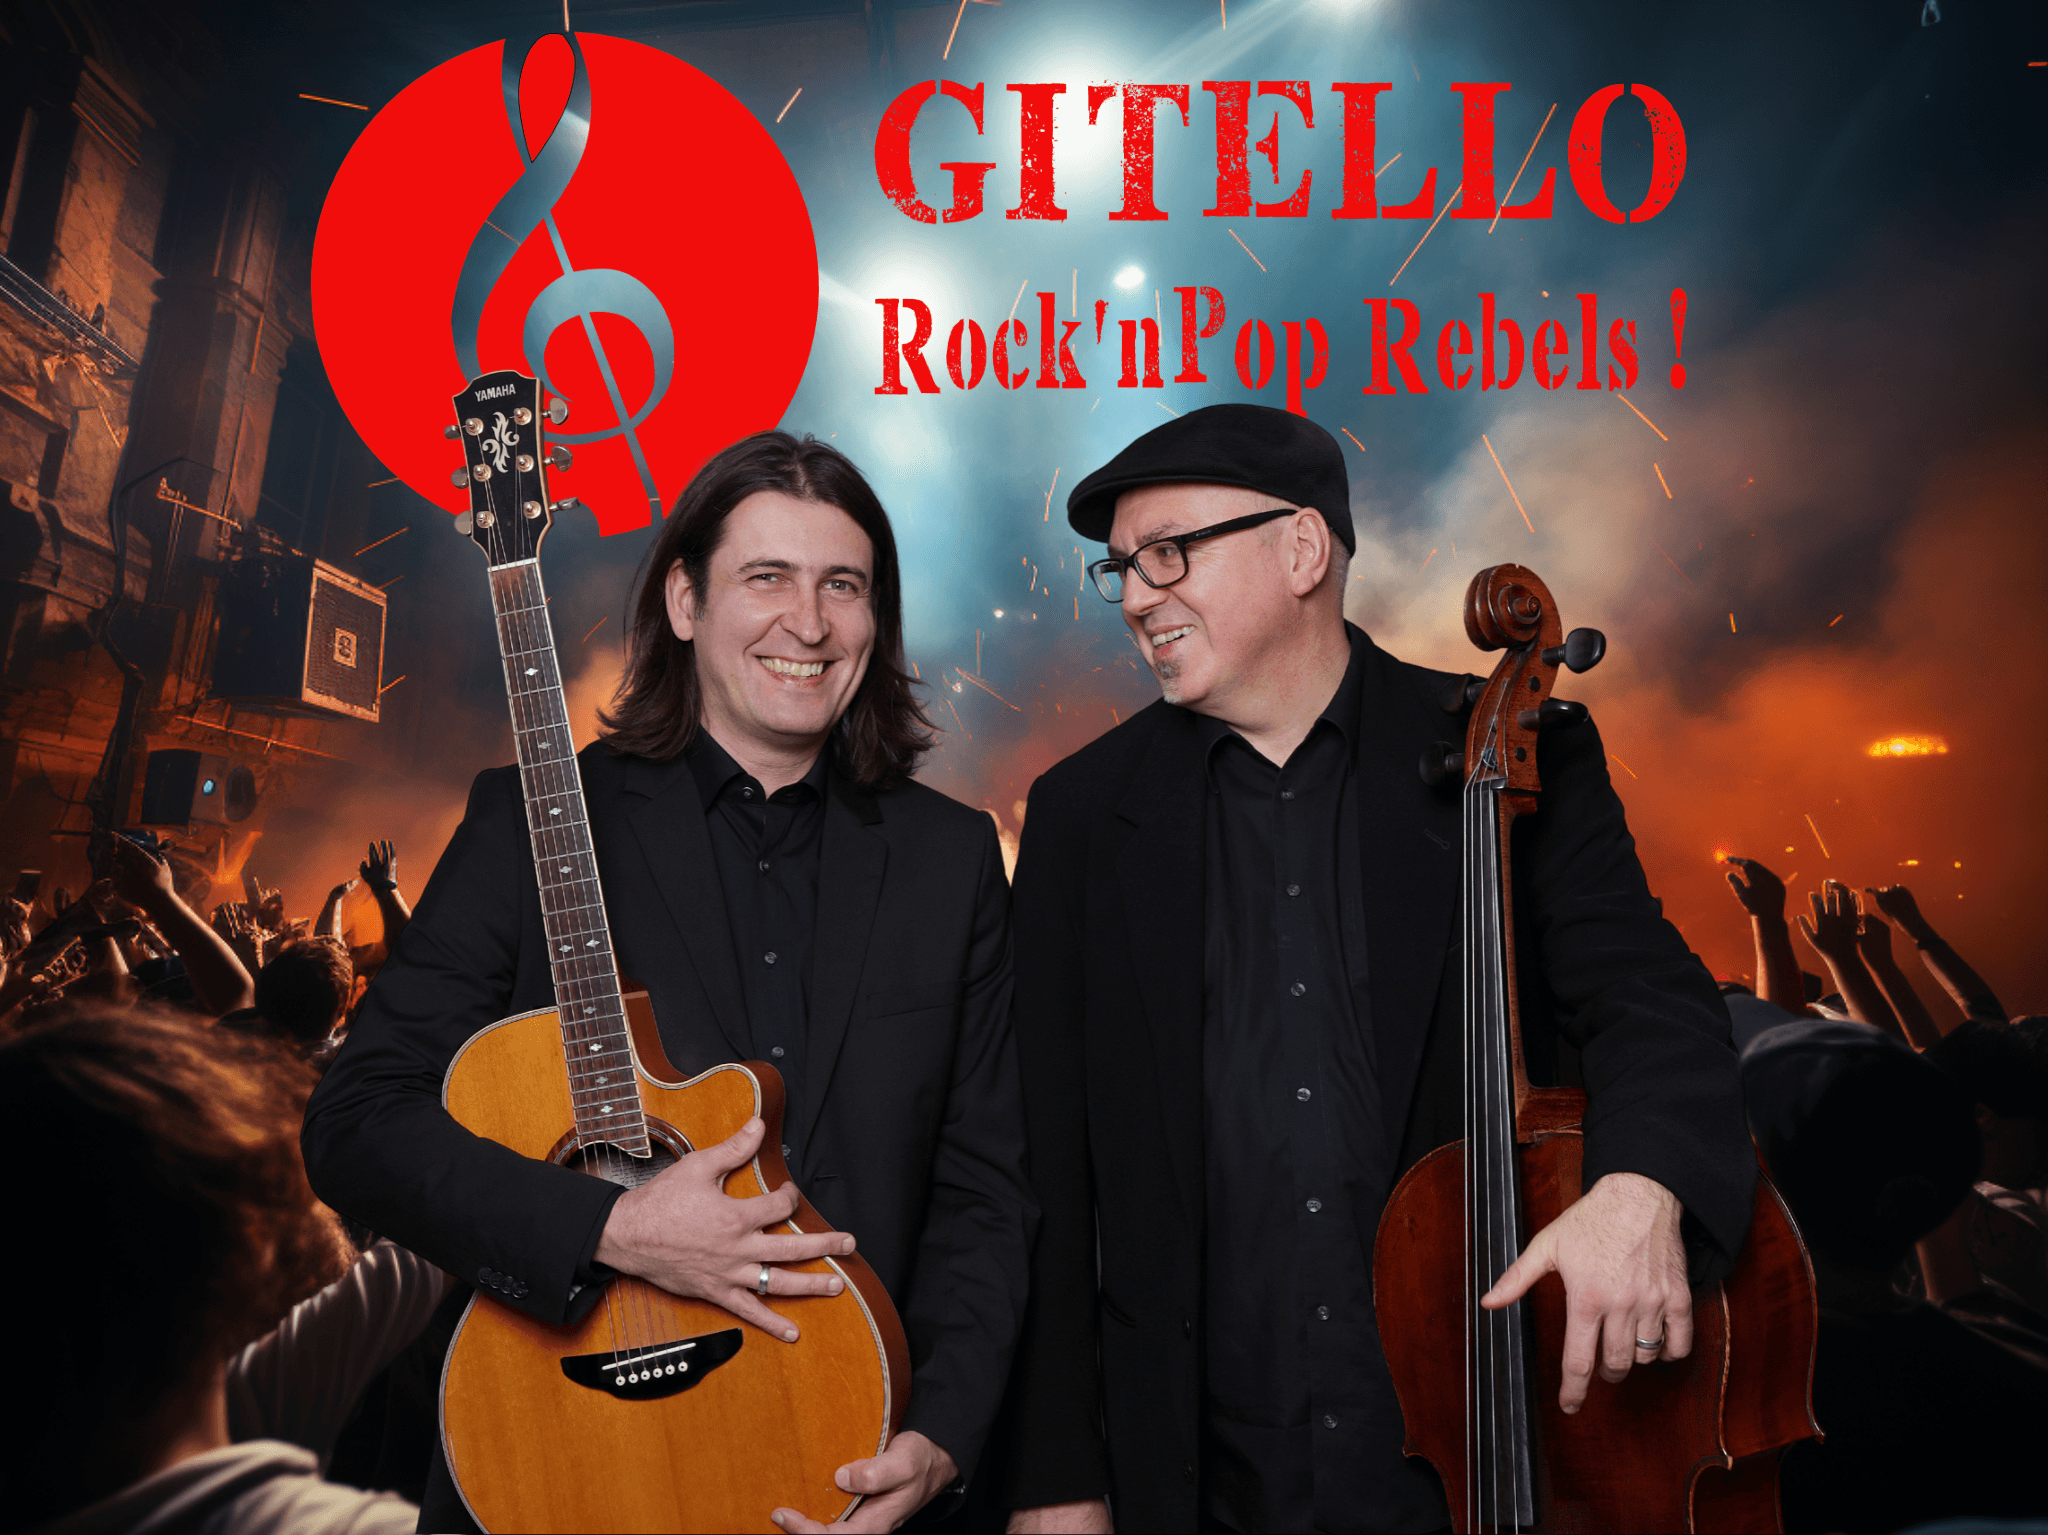 Galeriebild für Gitello - Rock'n Pop Rebels